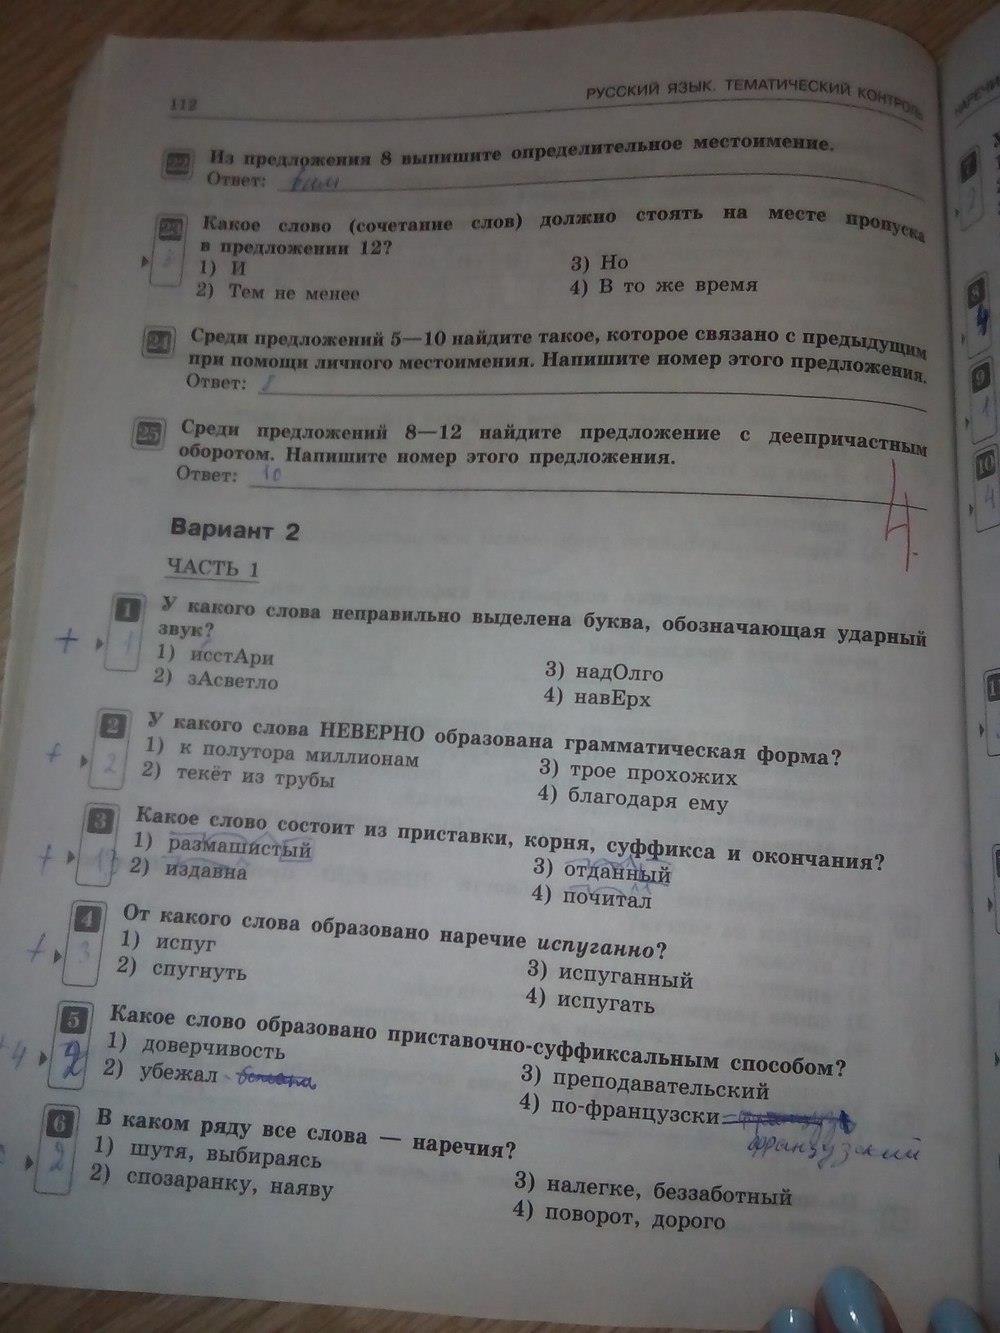 Тематический контроль русский язык 4 класс ответы